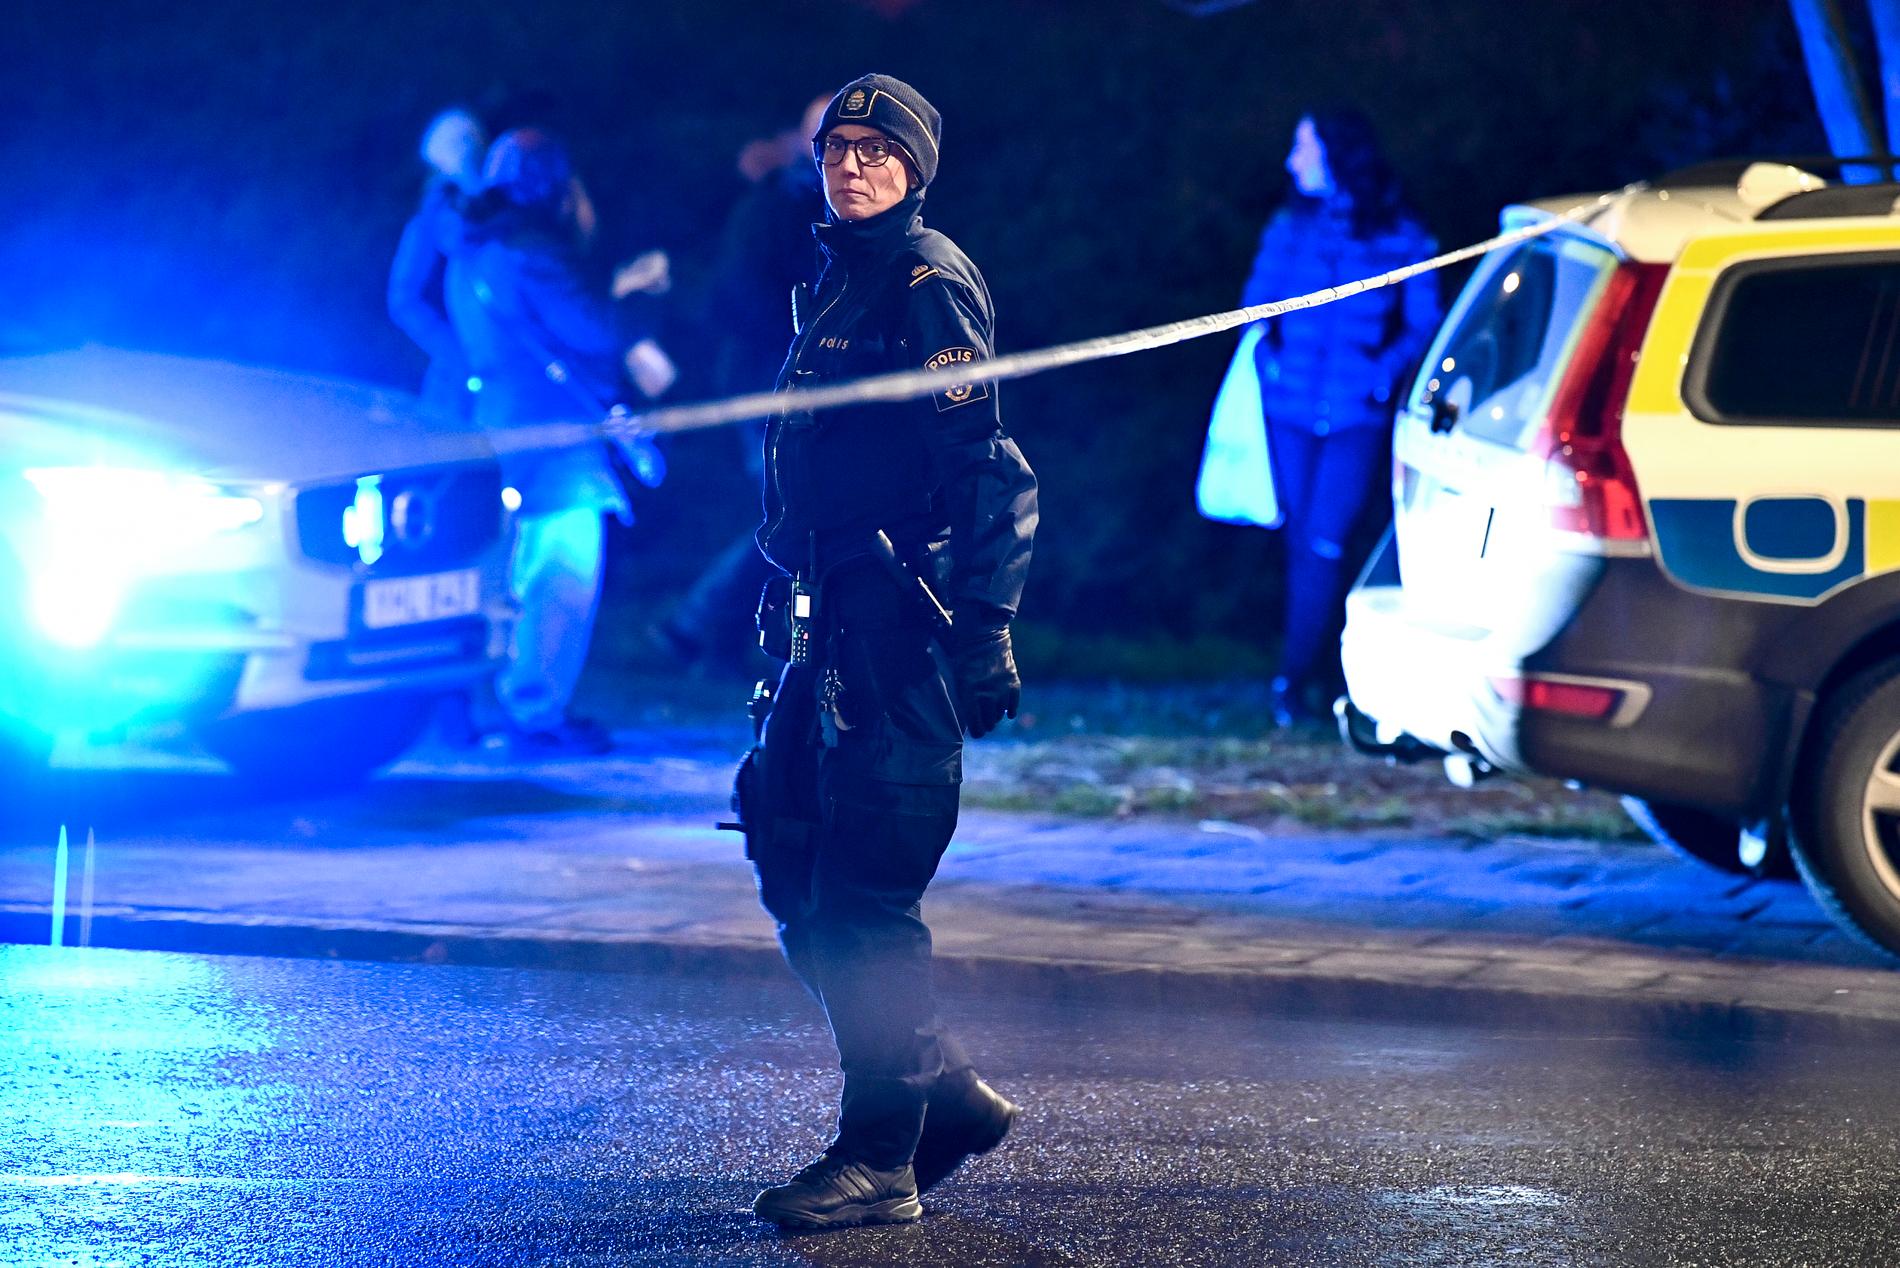 En man har avlidit efter att ha skjutits i området Hermodsdal i Malmö,